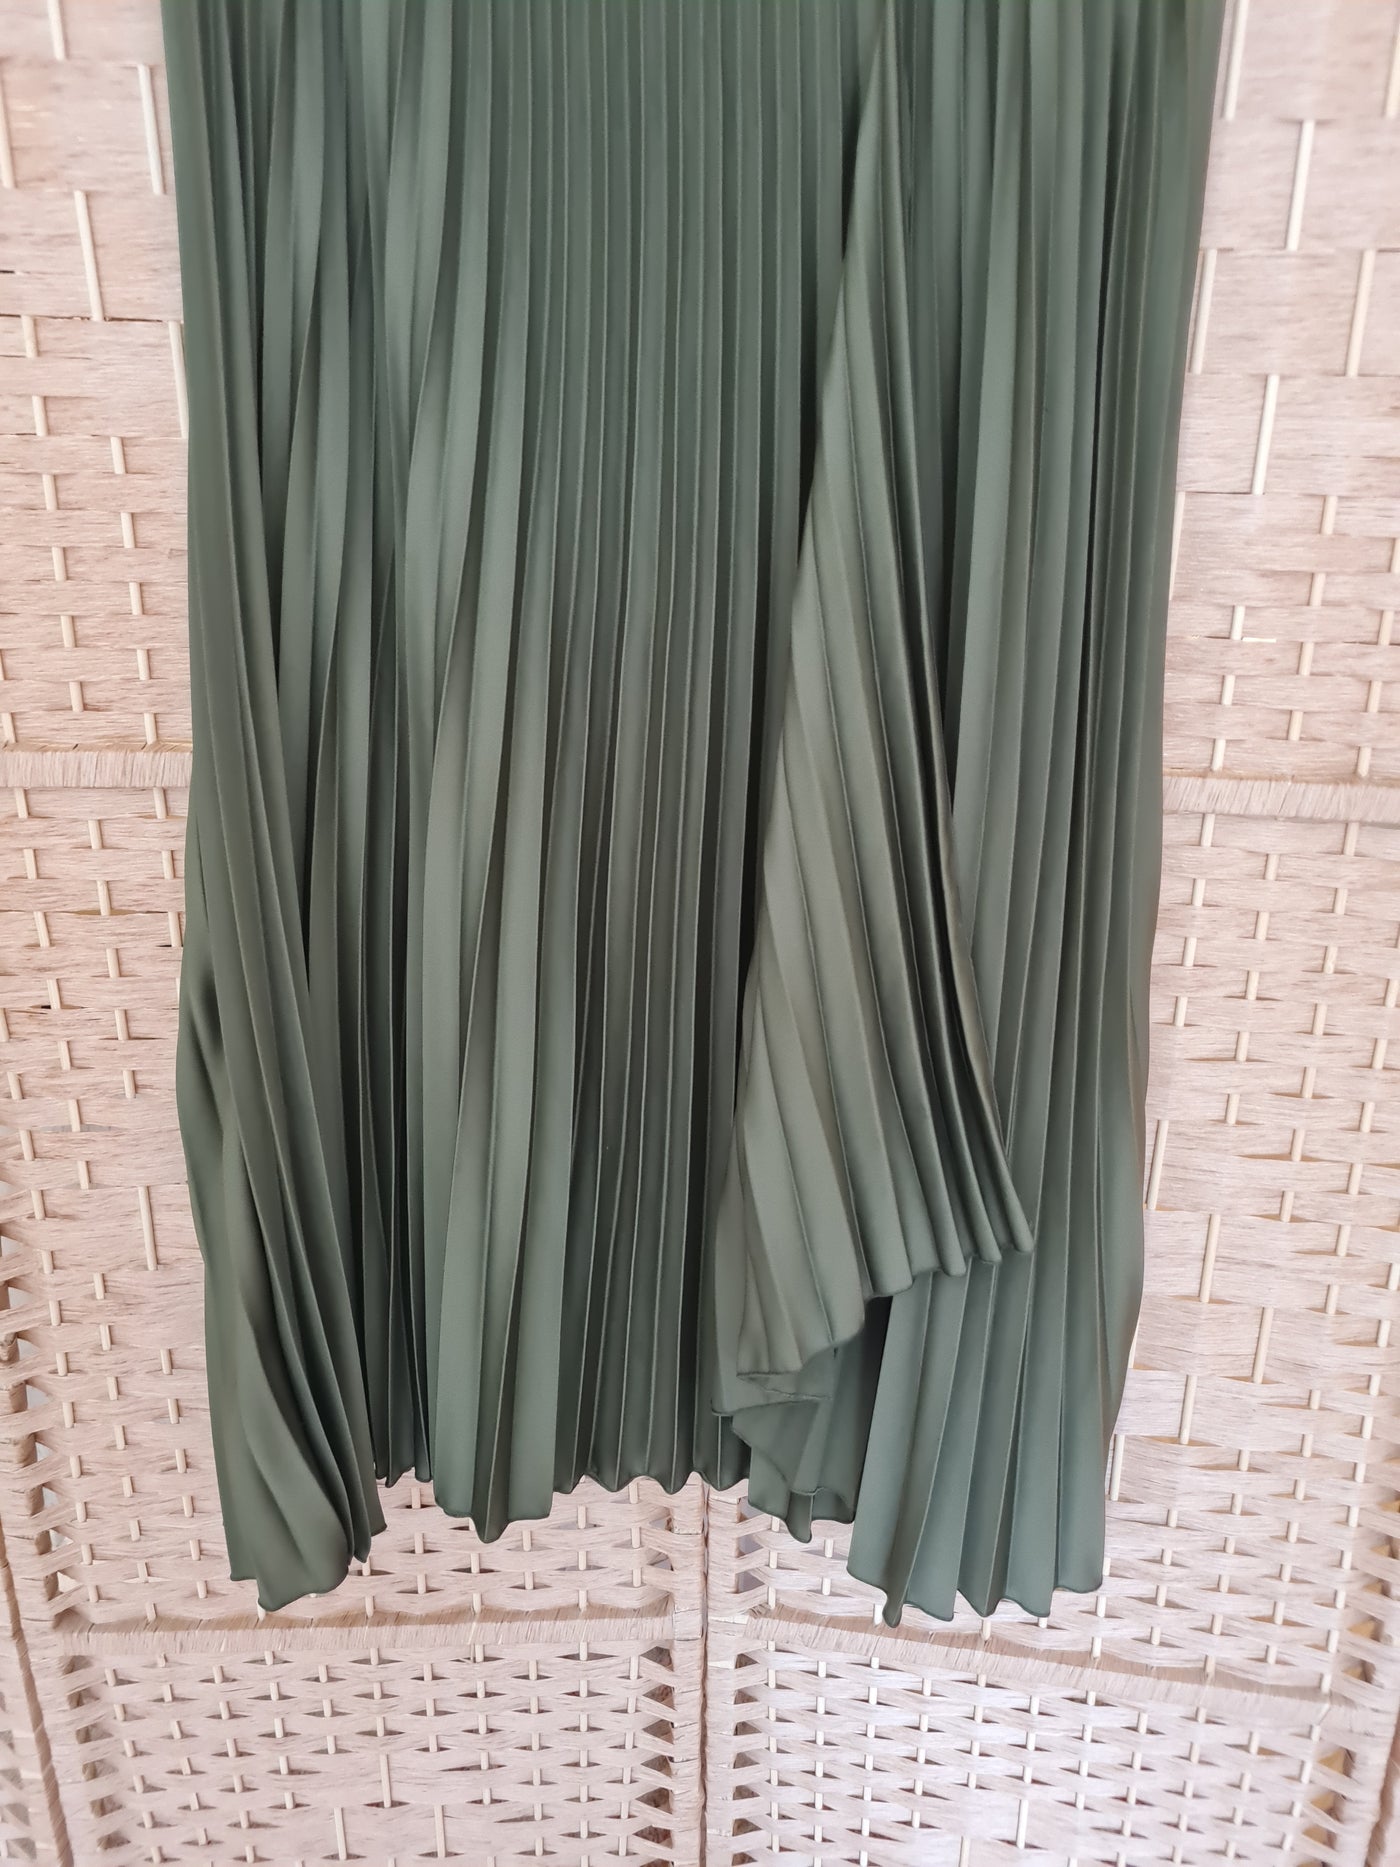 Per Una Khaki Pleated Skirt Size 16